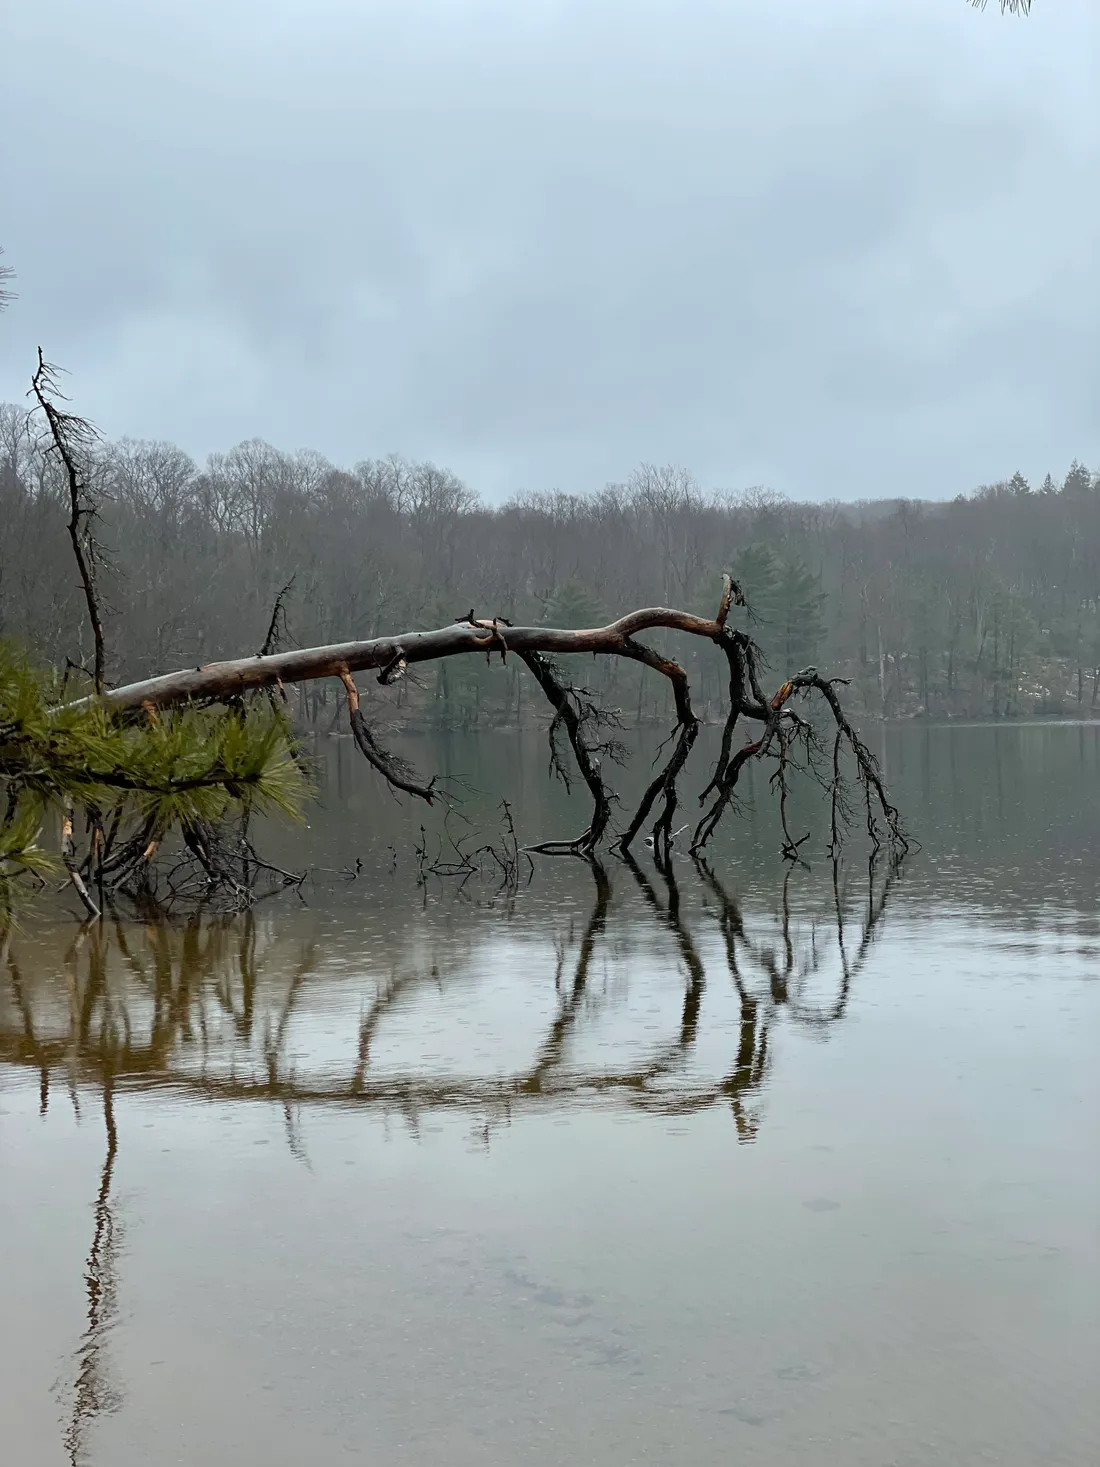 A fallen tree in a lake